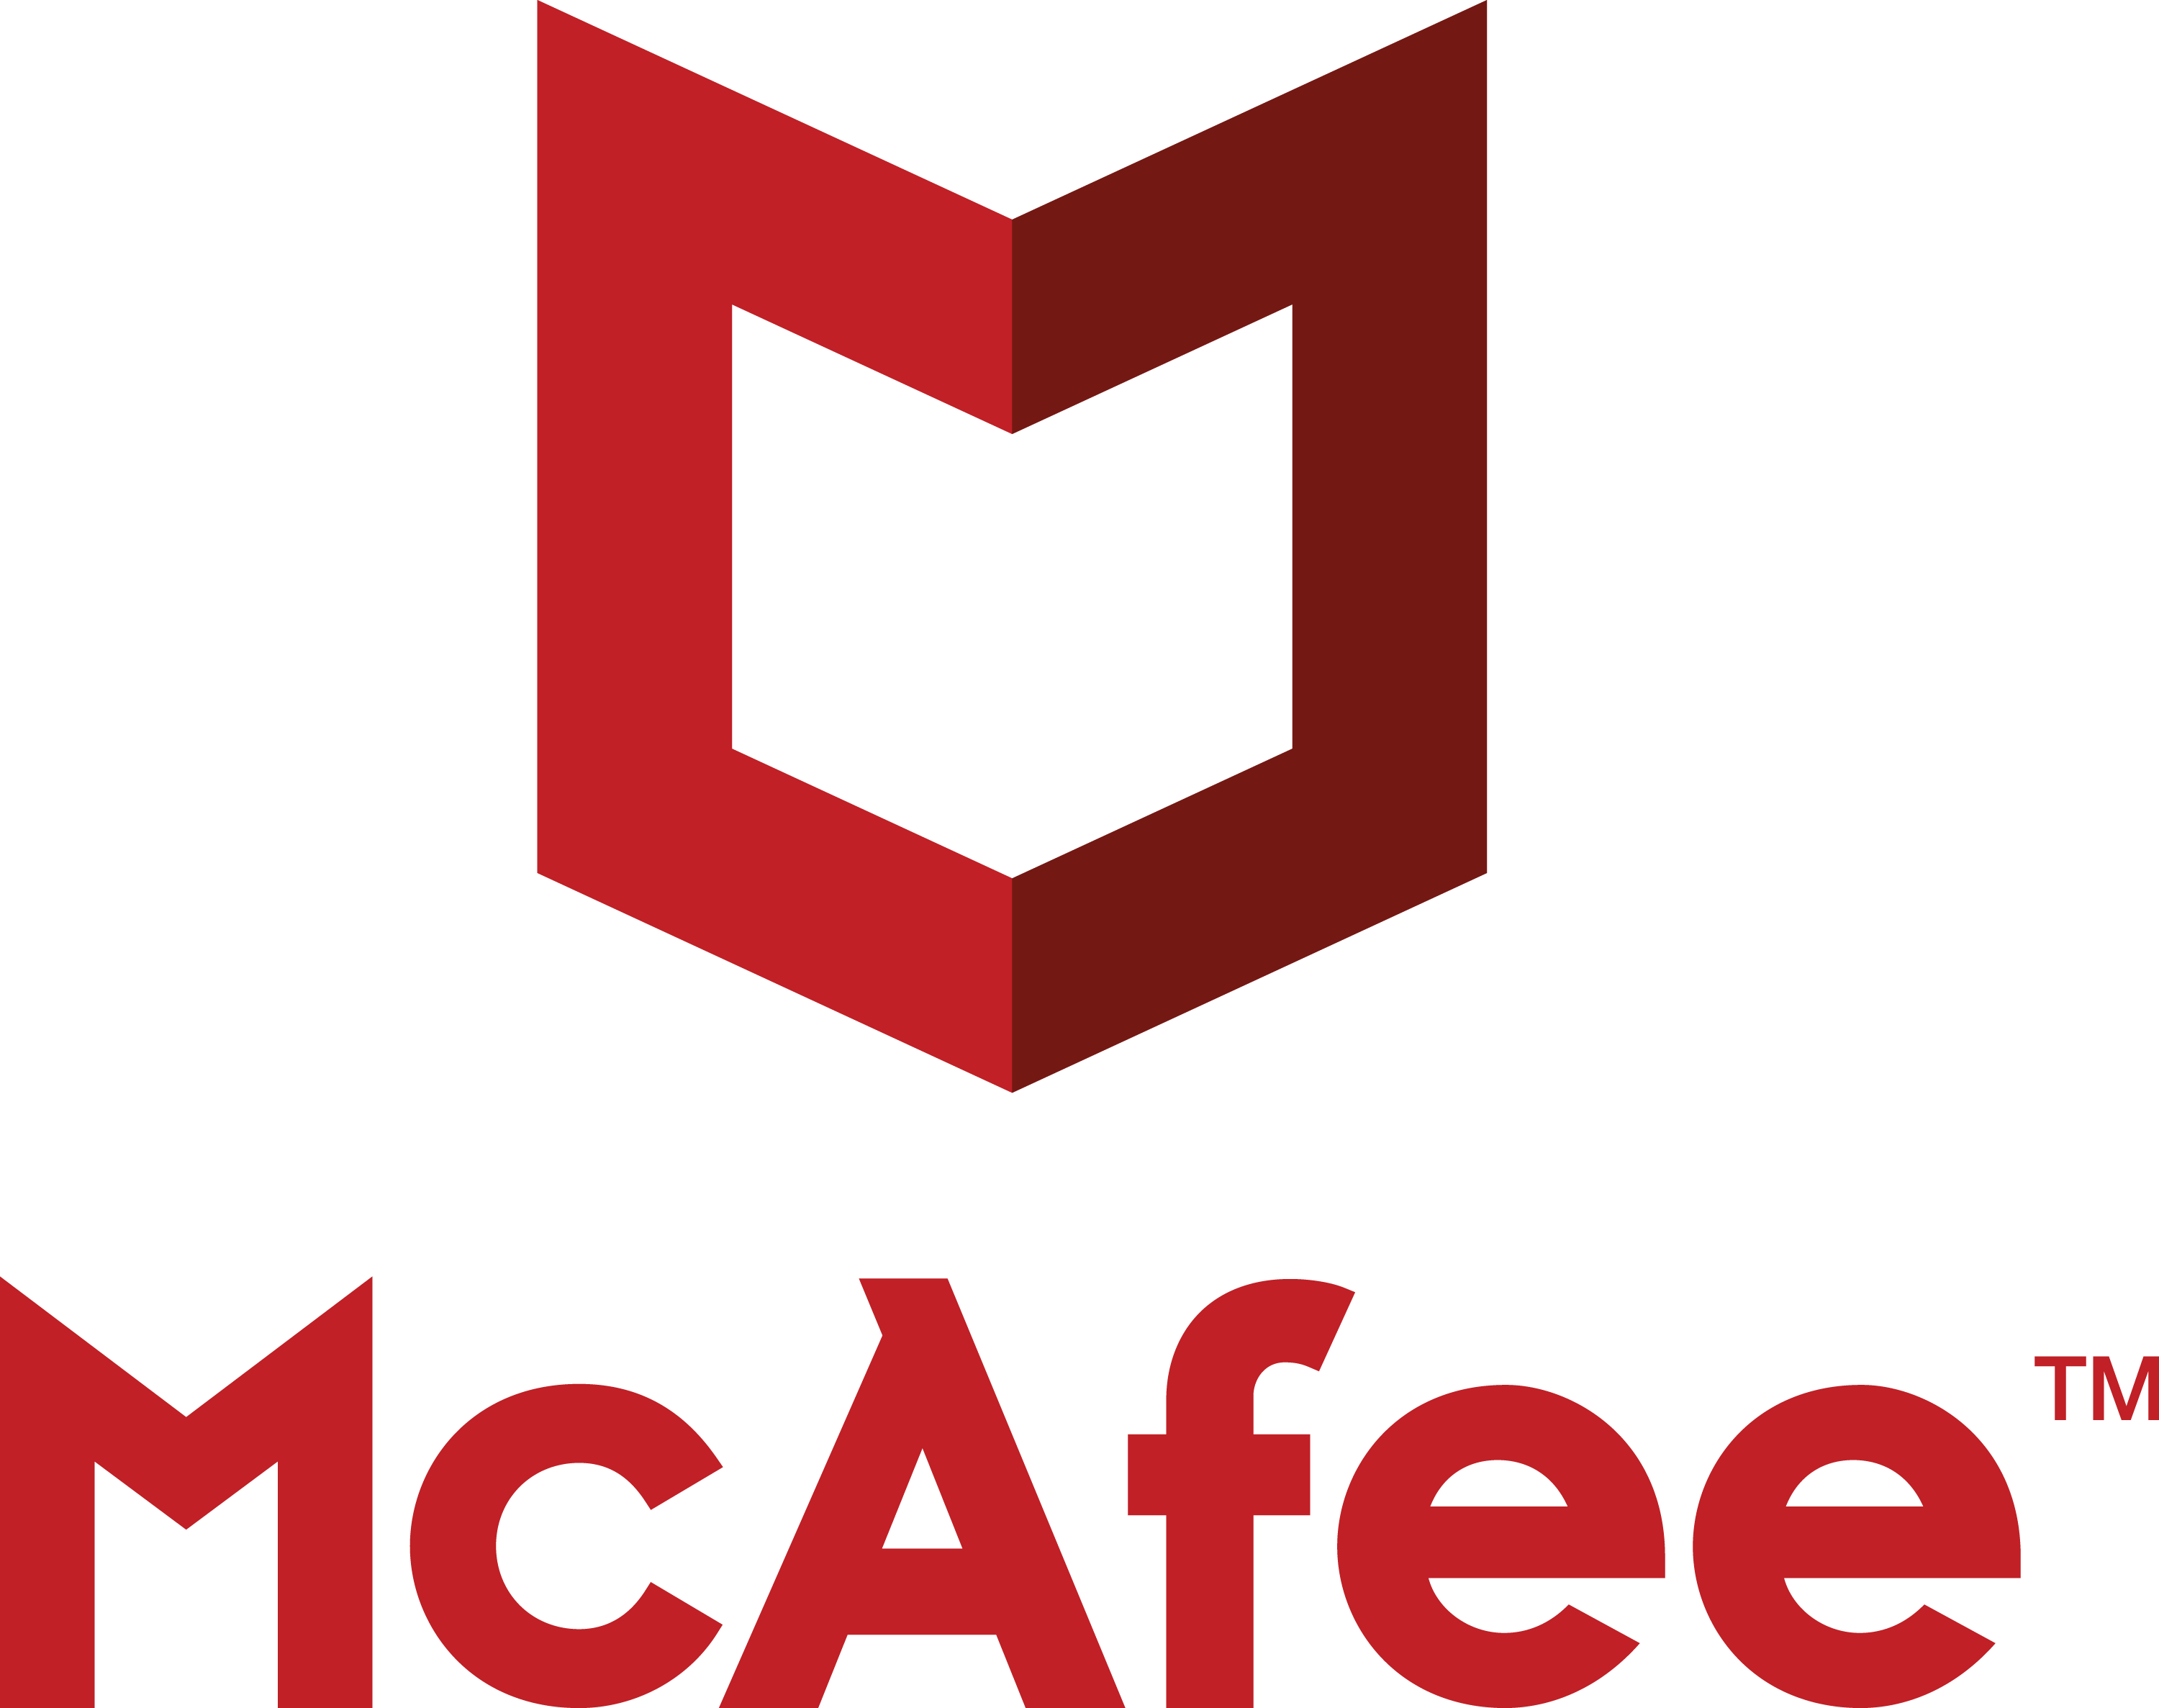 Mcafee-logo.png